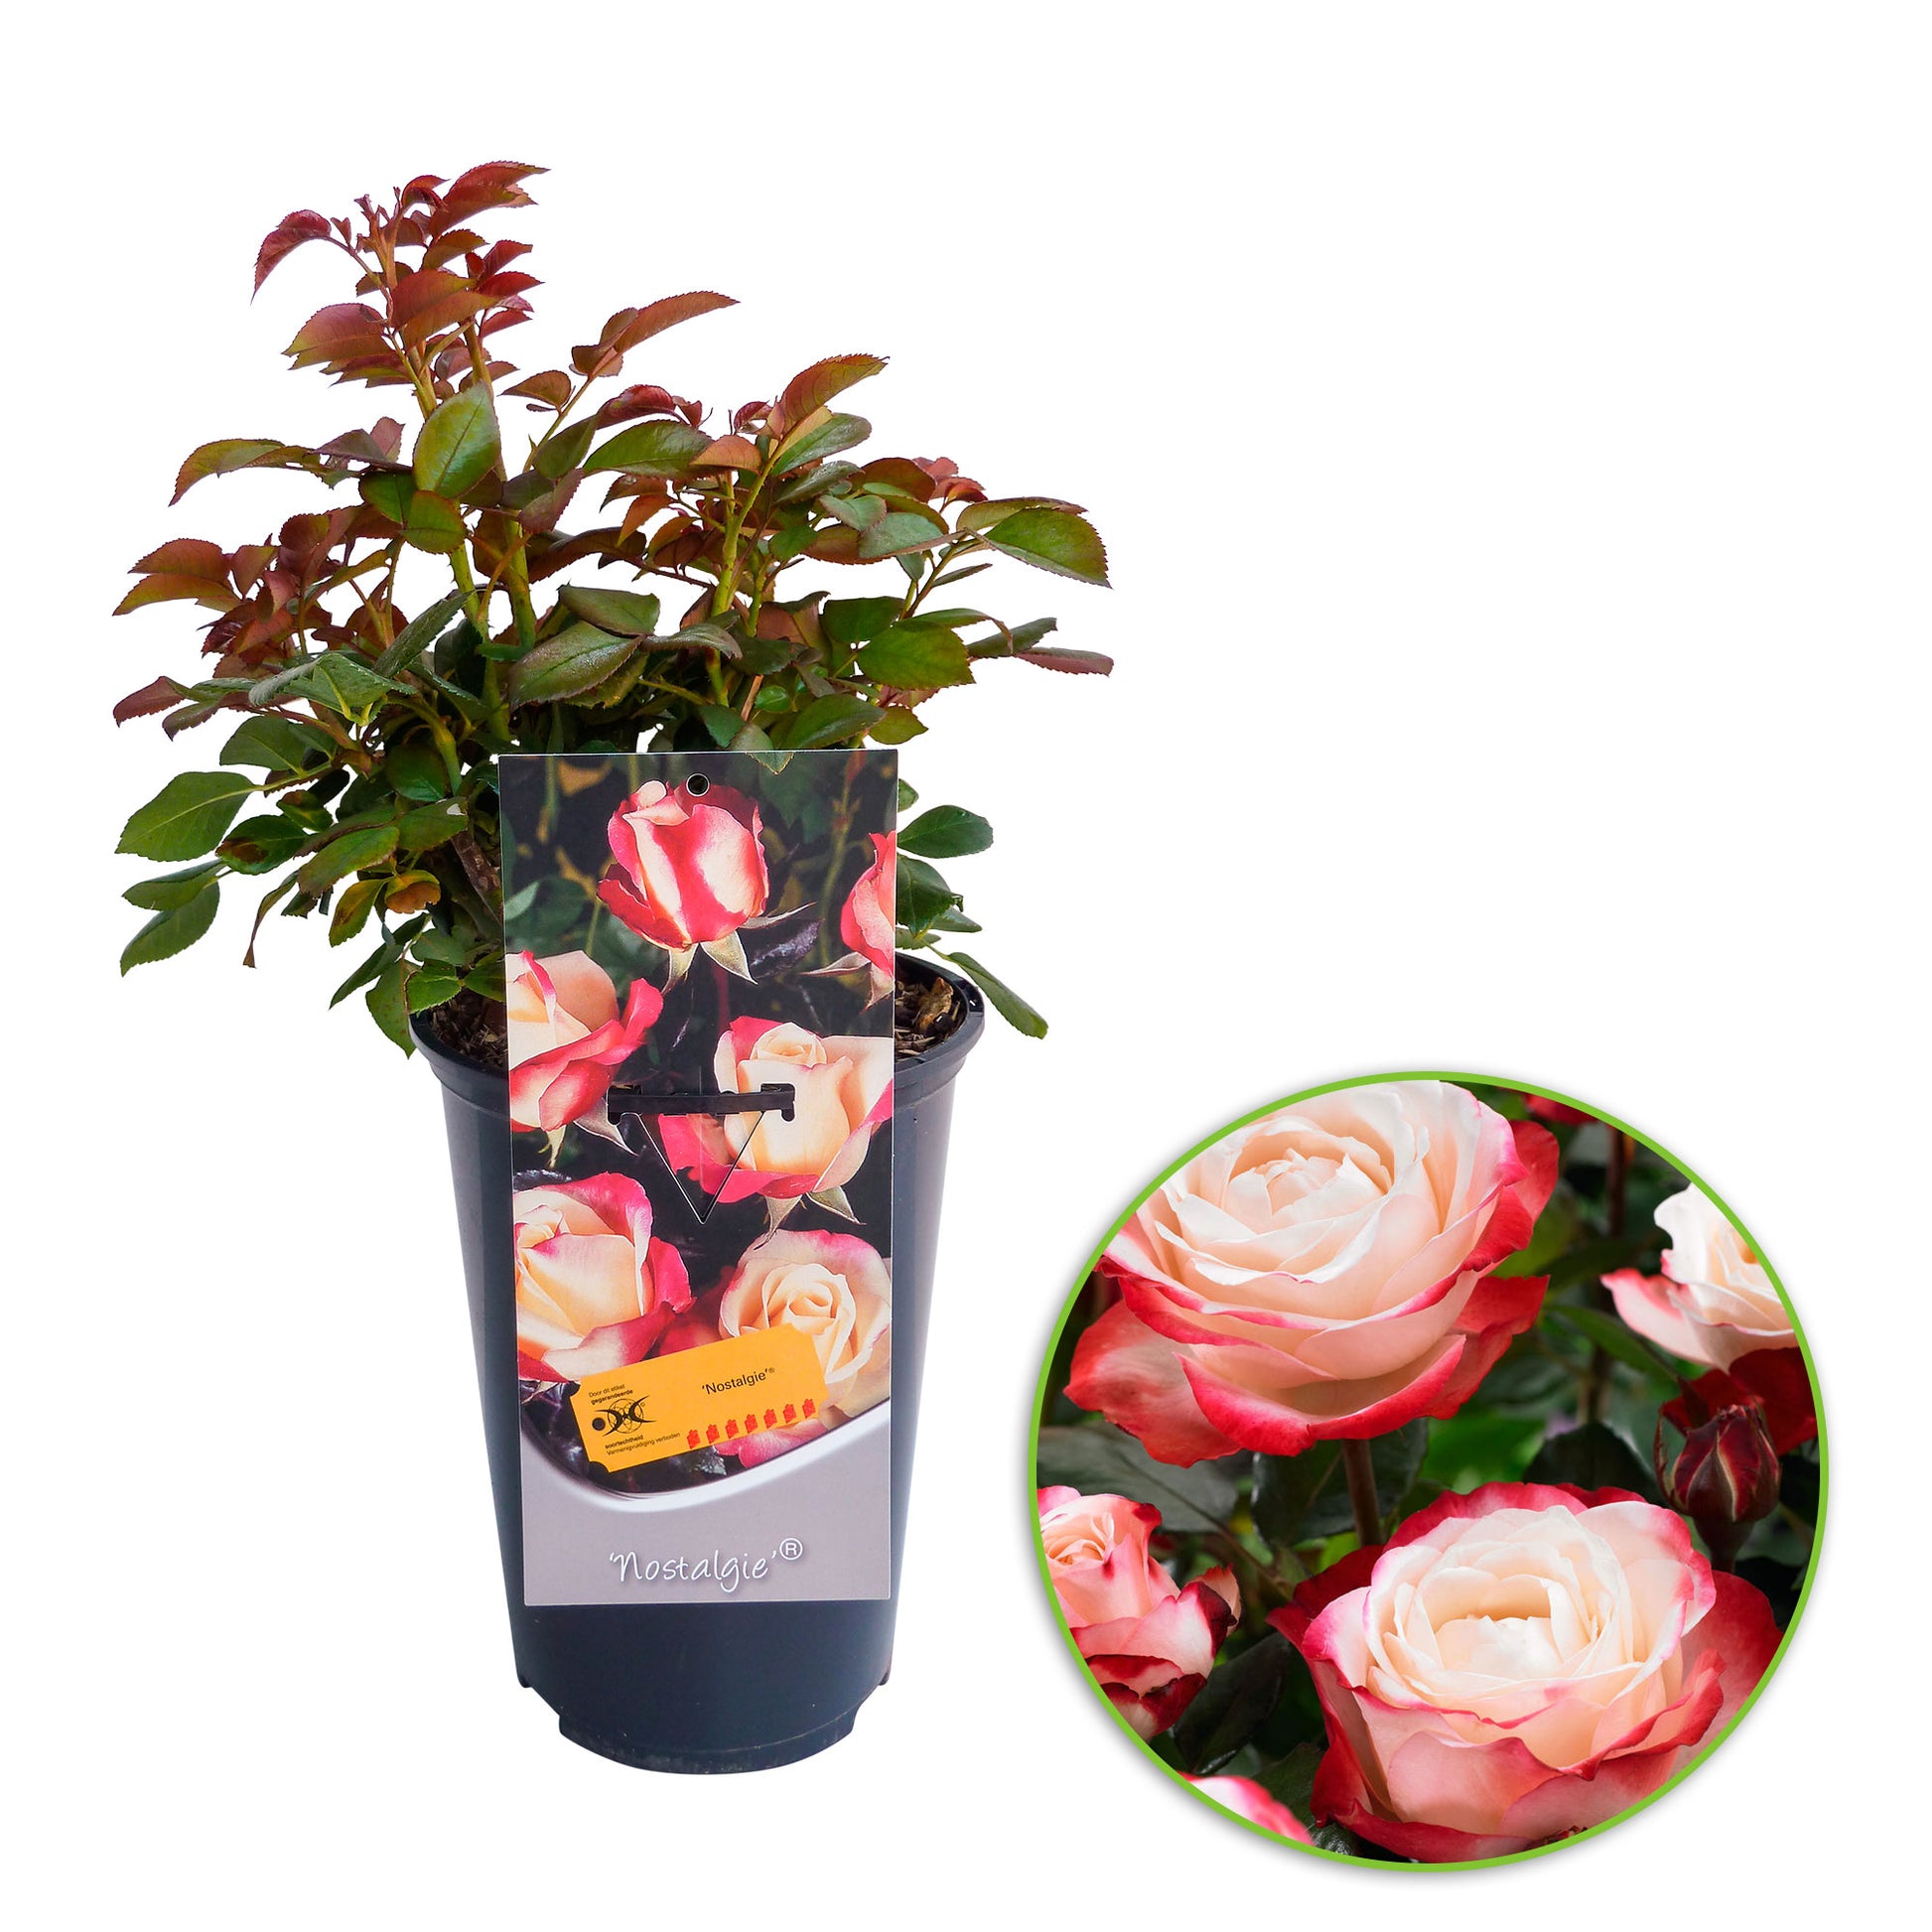 Creme-Rosa Rosa kaufen \'Nostalgie\'® Großblütige - Rose Winterhart